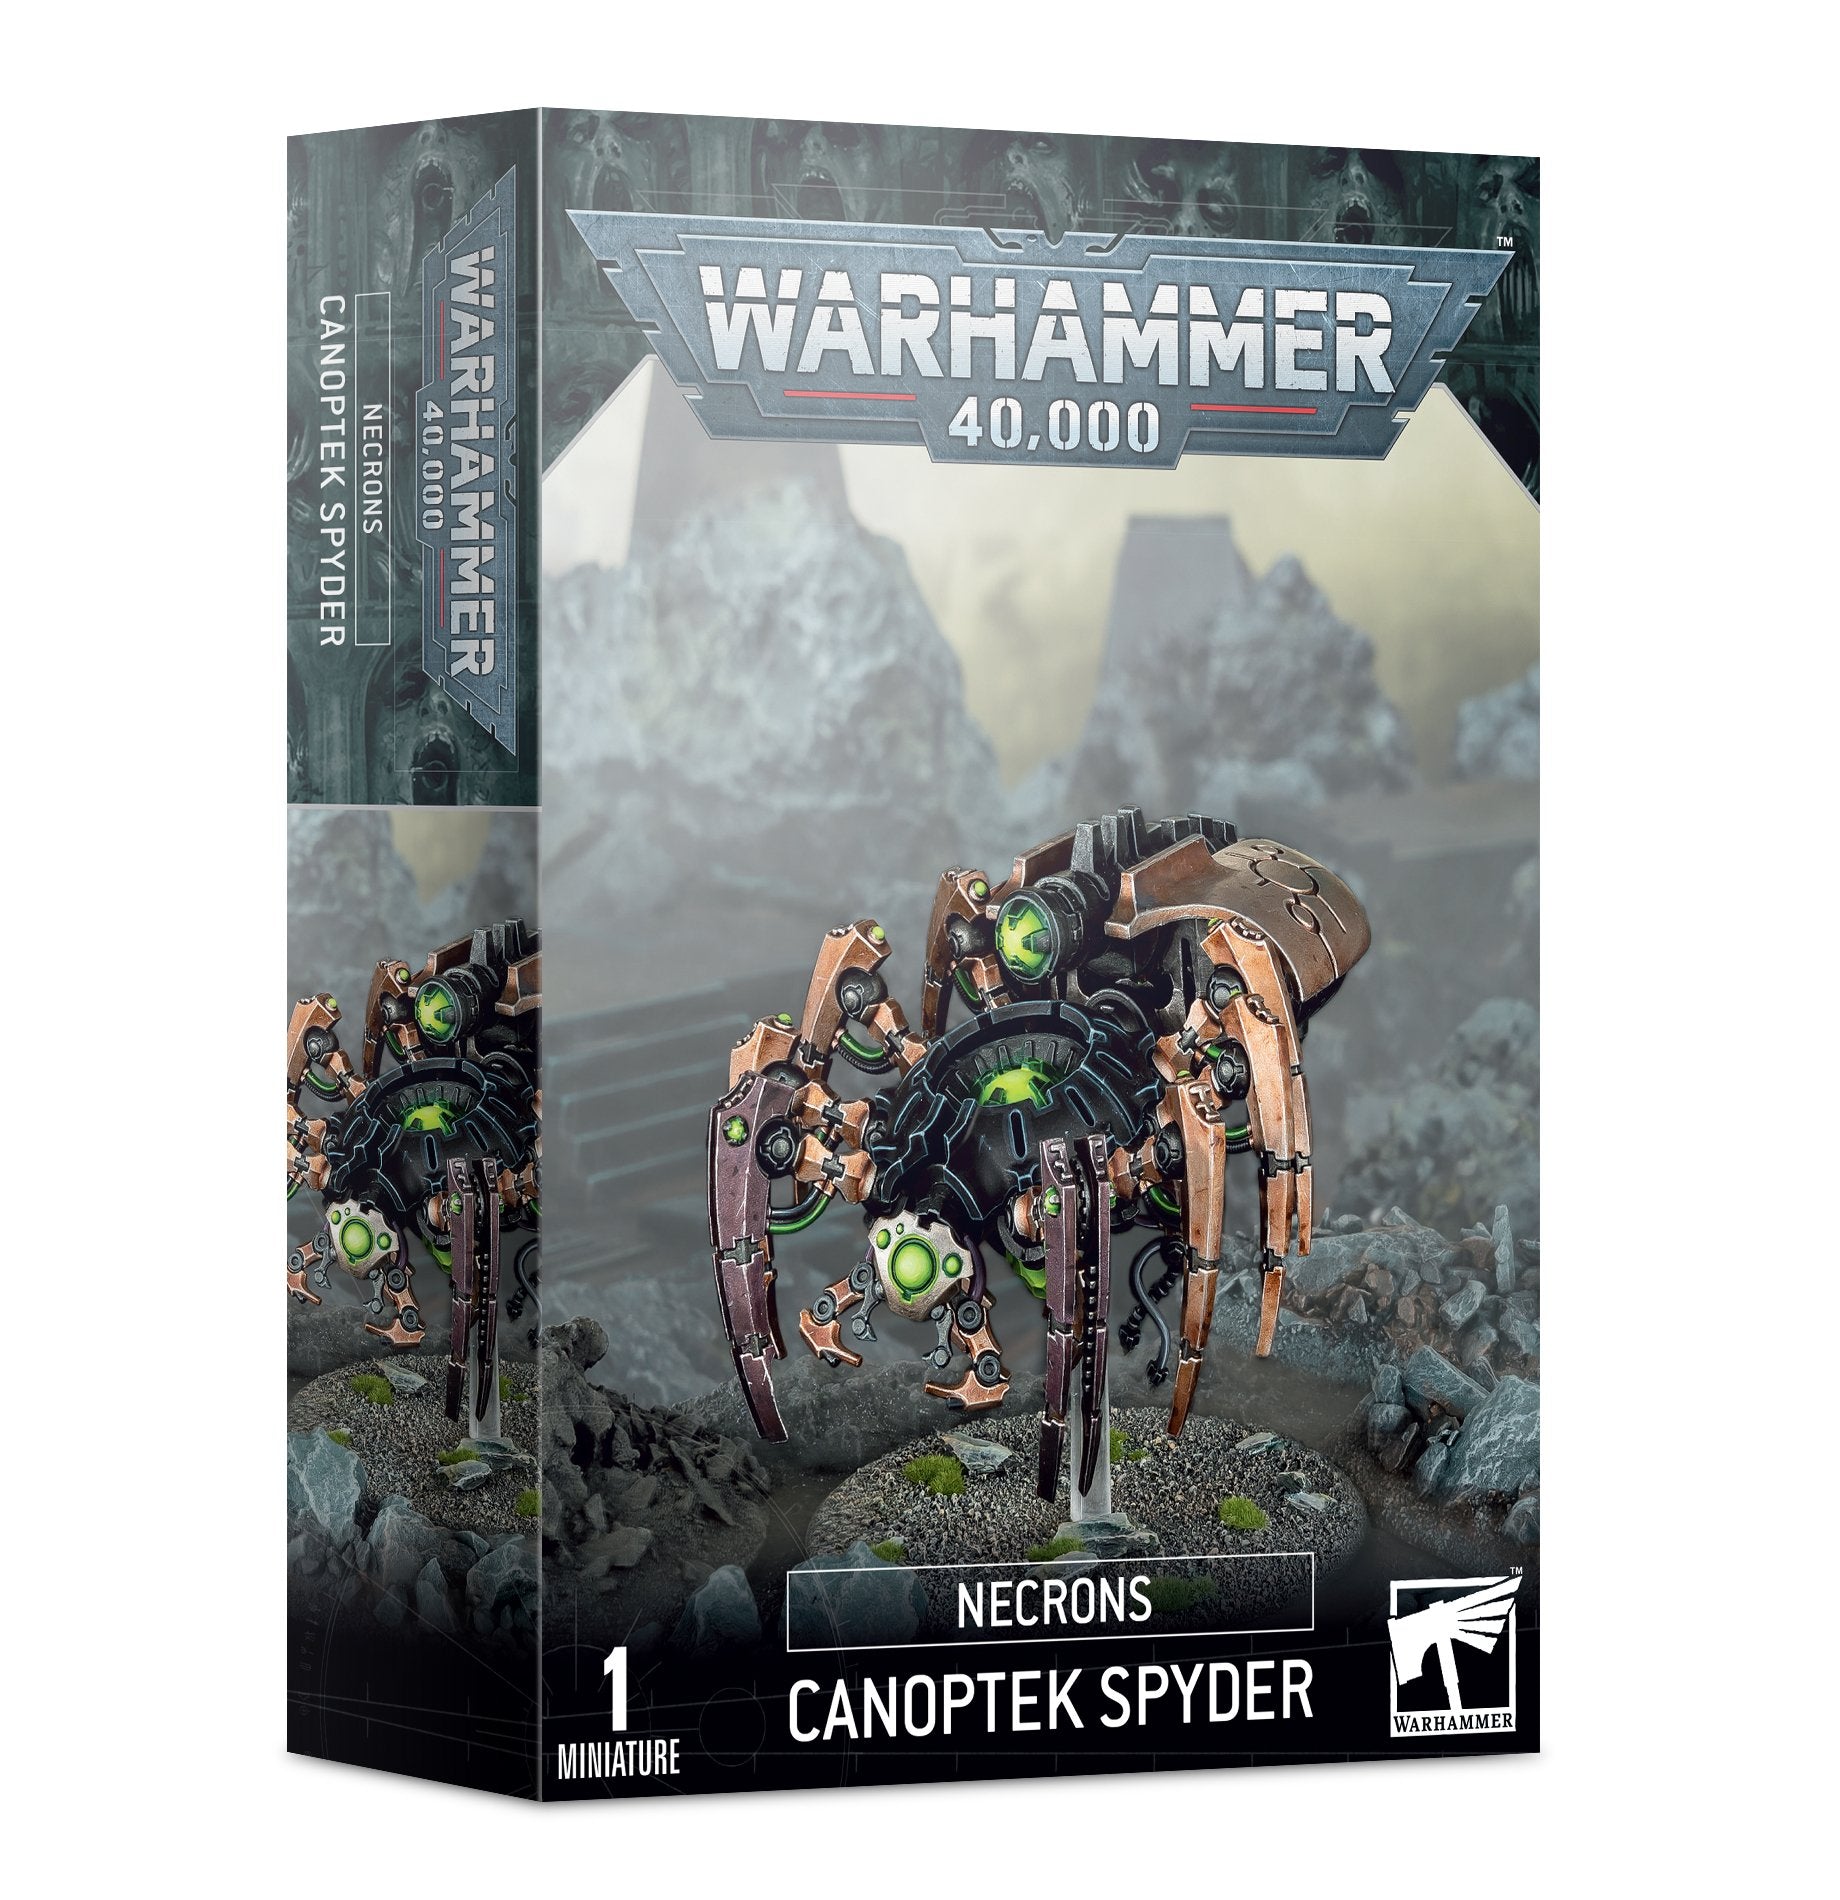 Necron Canoptek Spyder warhammer-40K